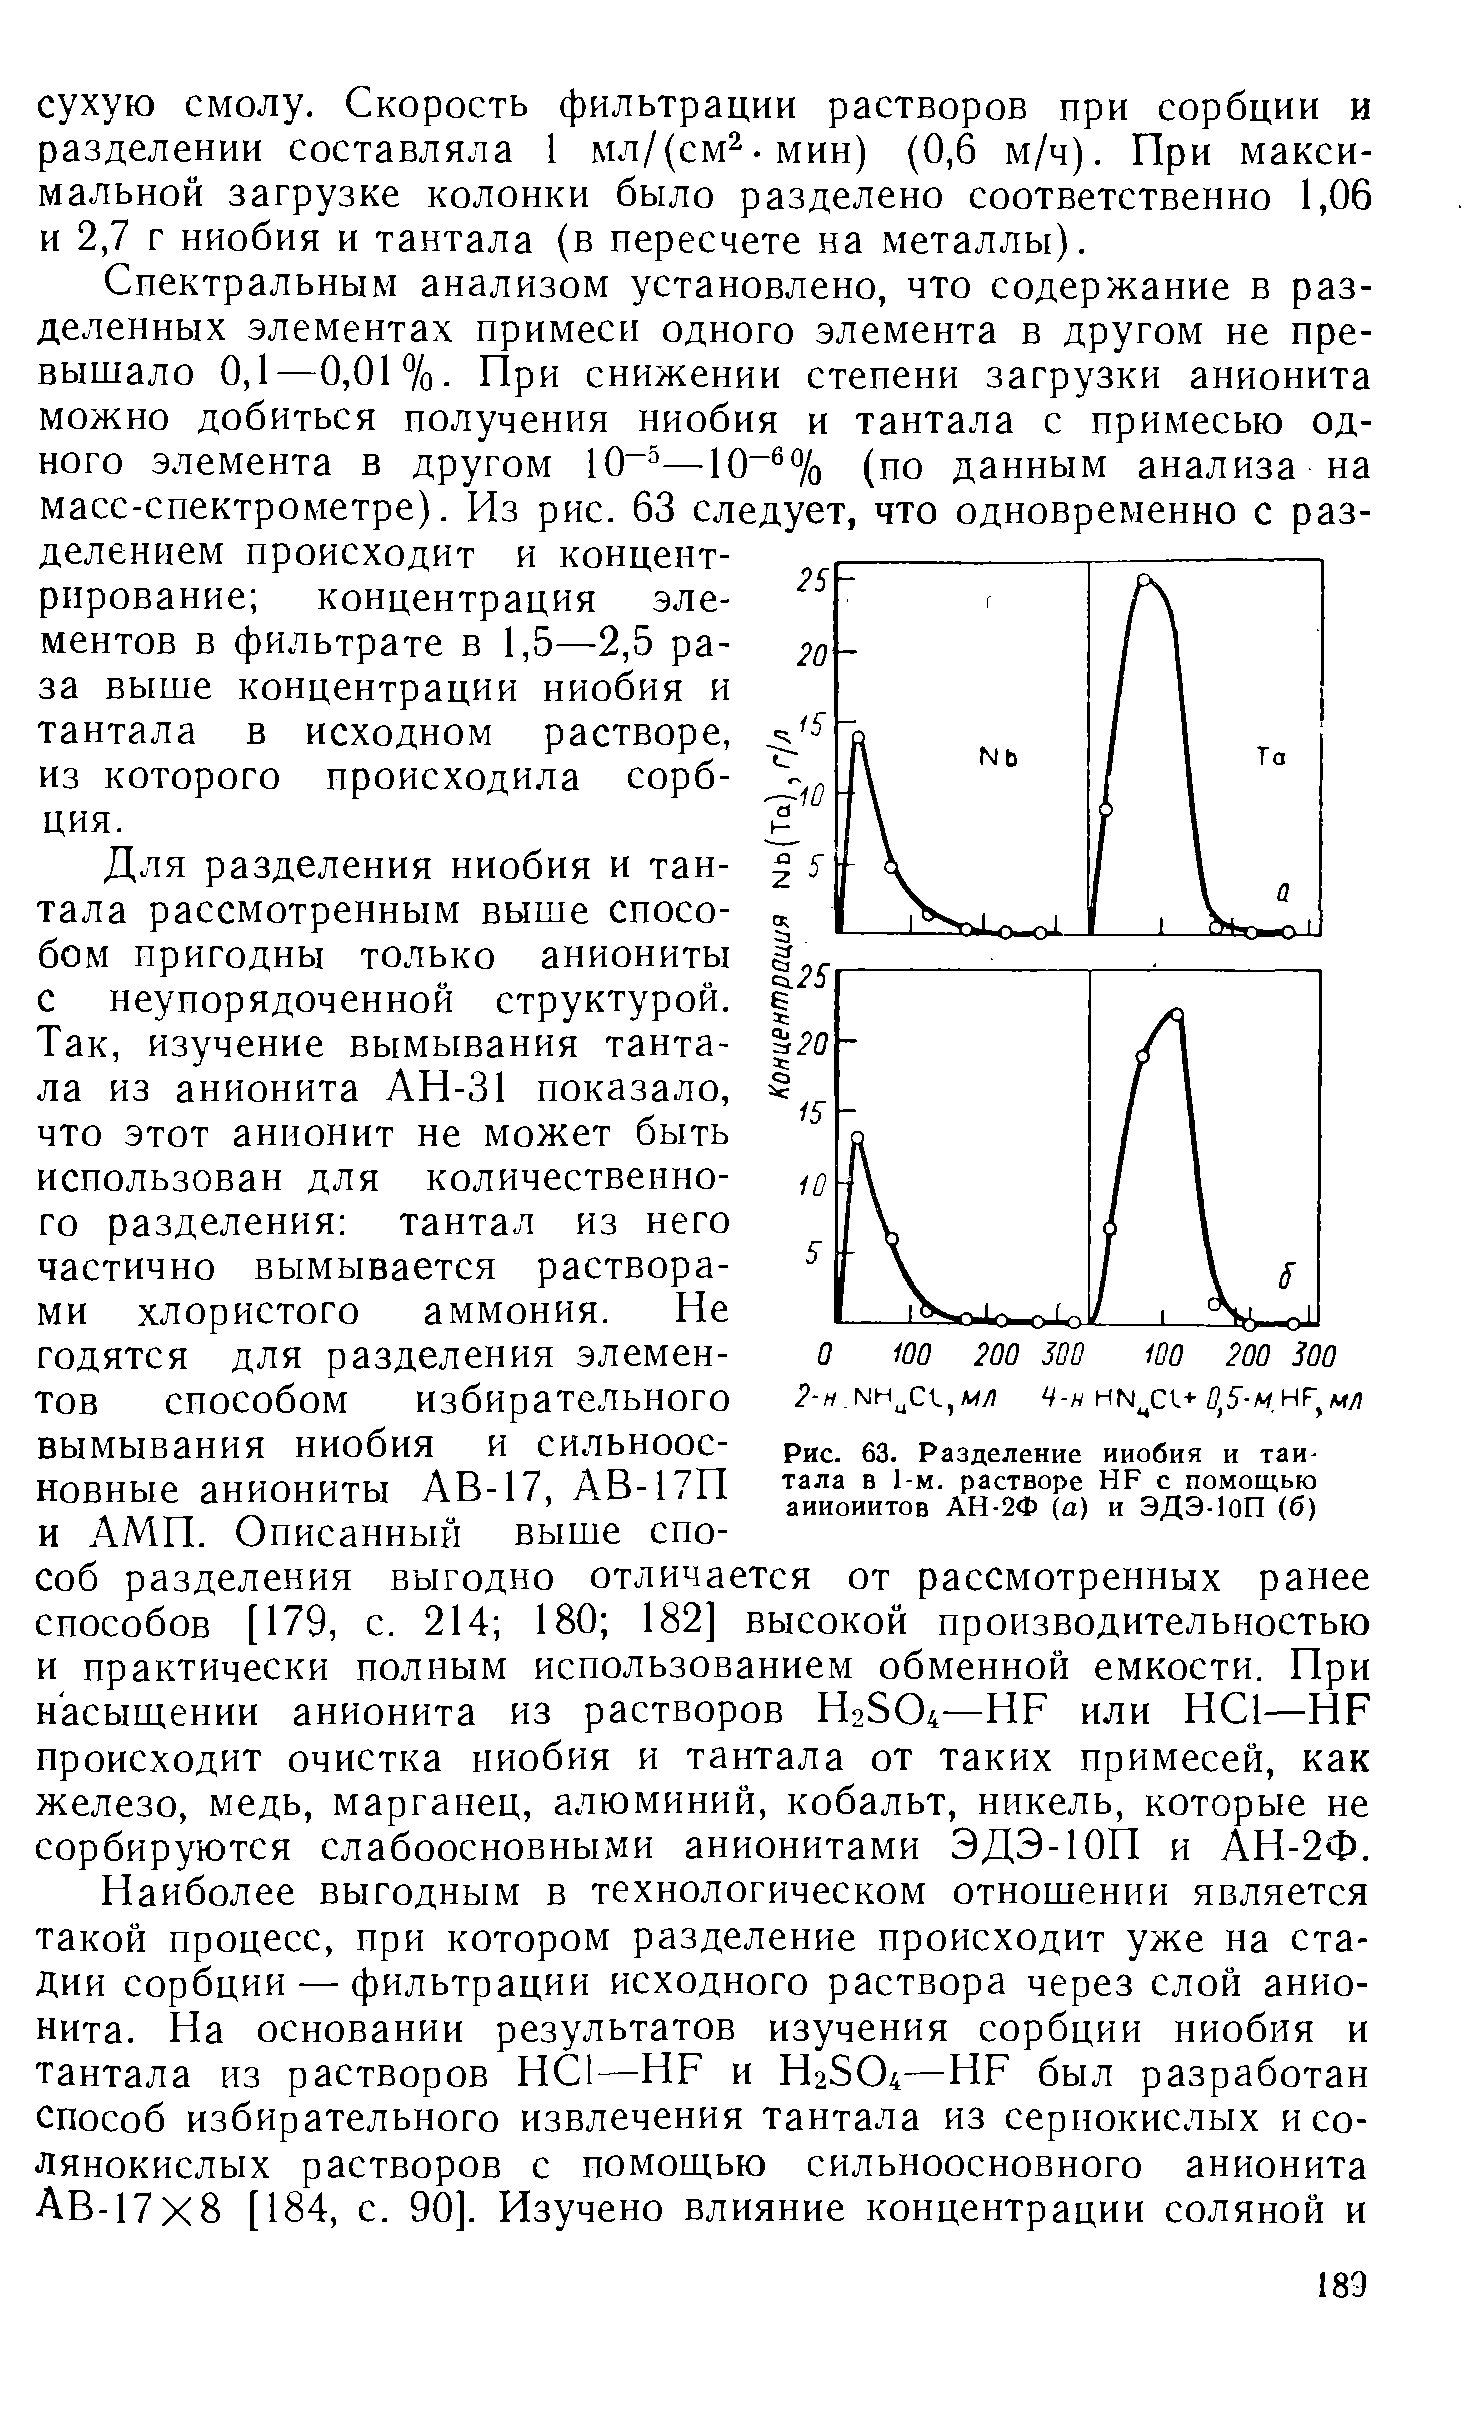 Рис. 63. Разделение ниобия и тантала в 1-м. растворе HF с помощью анионитов АН-2Ф (а) и ЭДЭ-ЮП (б)
